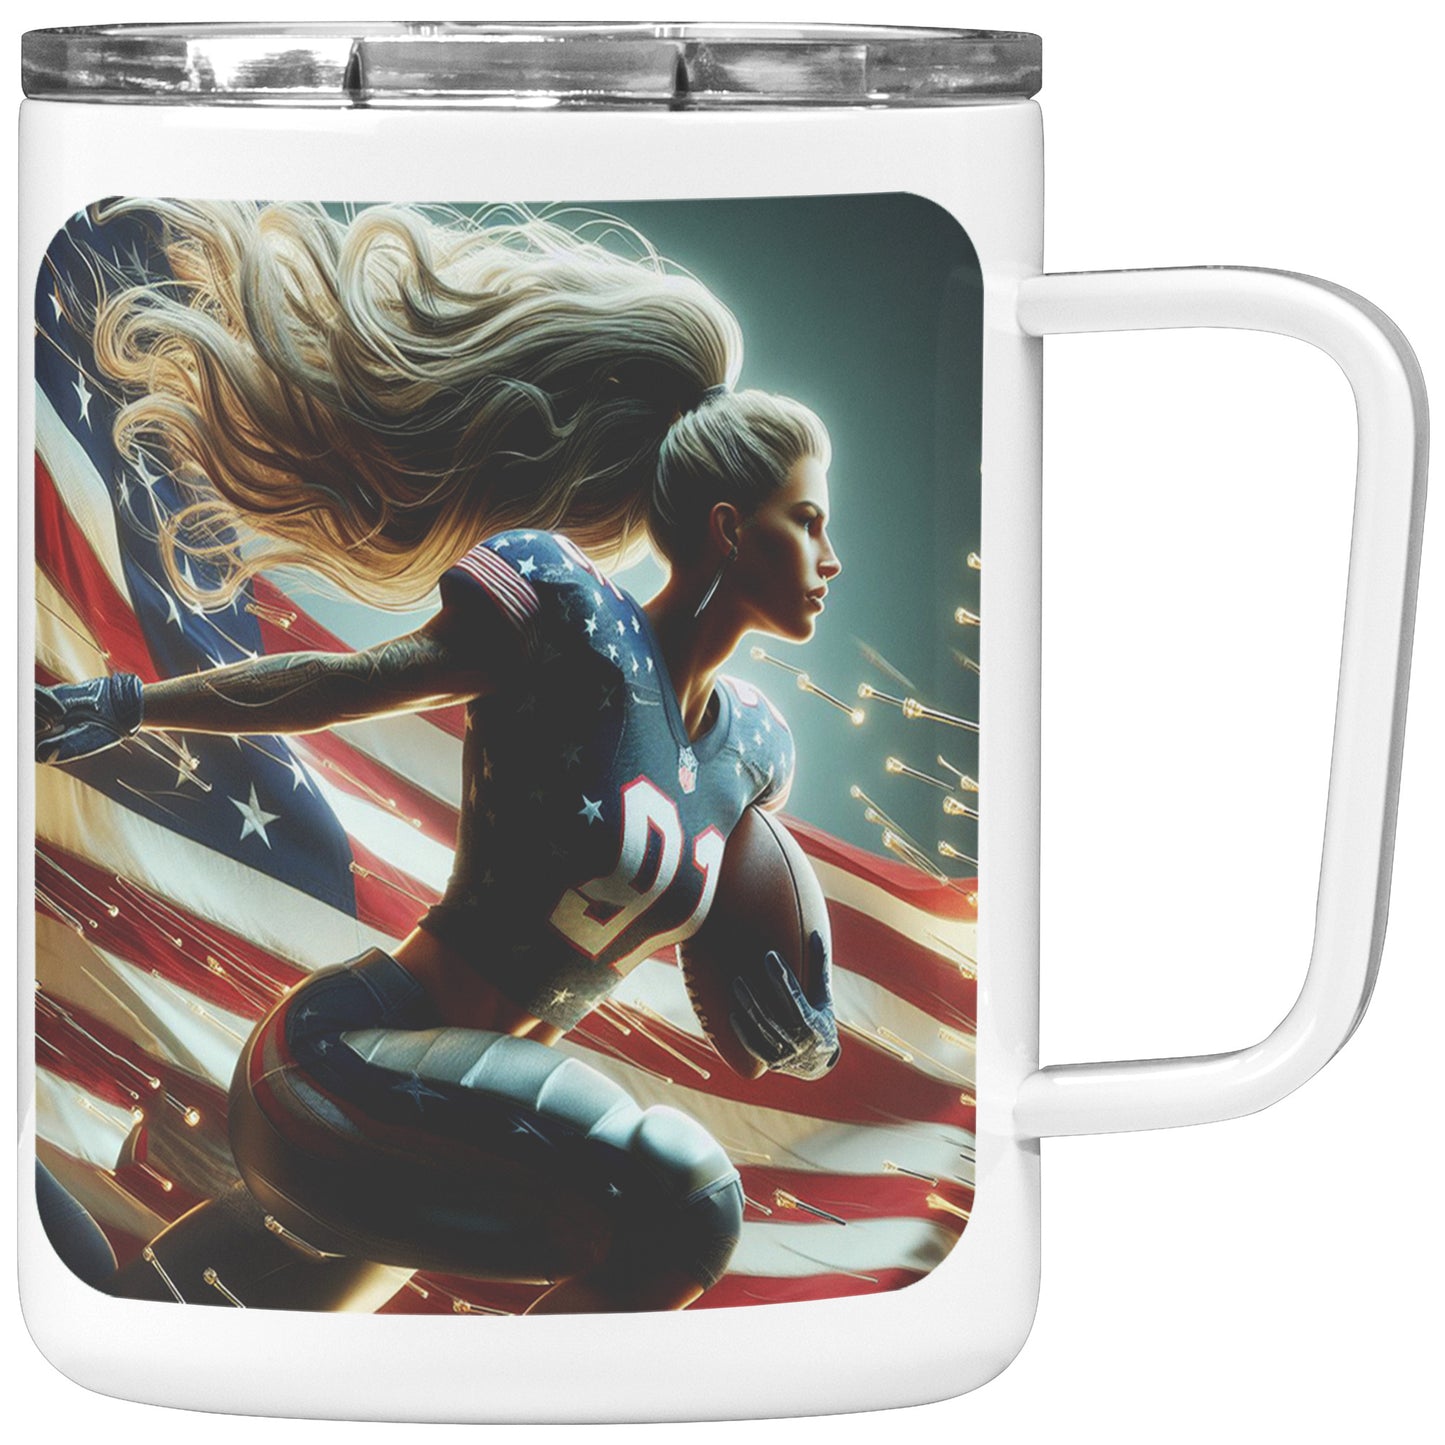 Woman Football Player - Insulated Coffee Mug #31